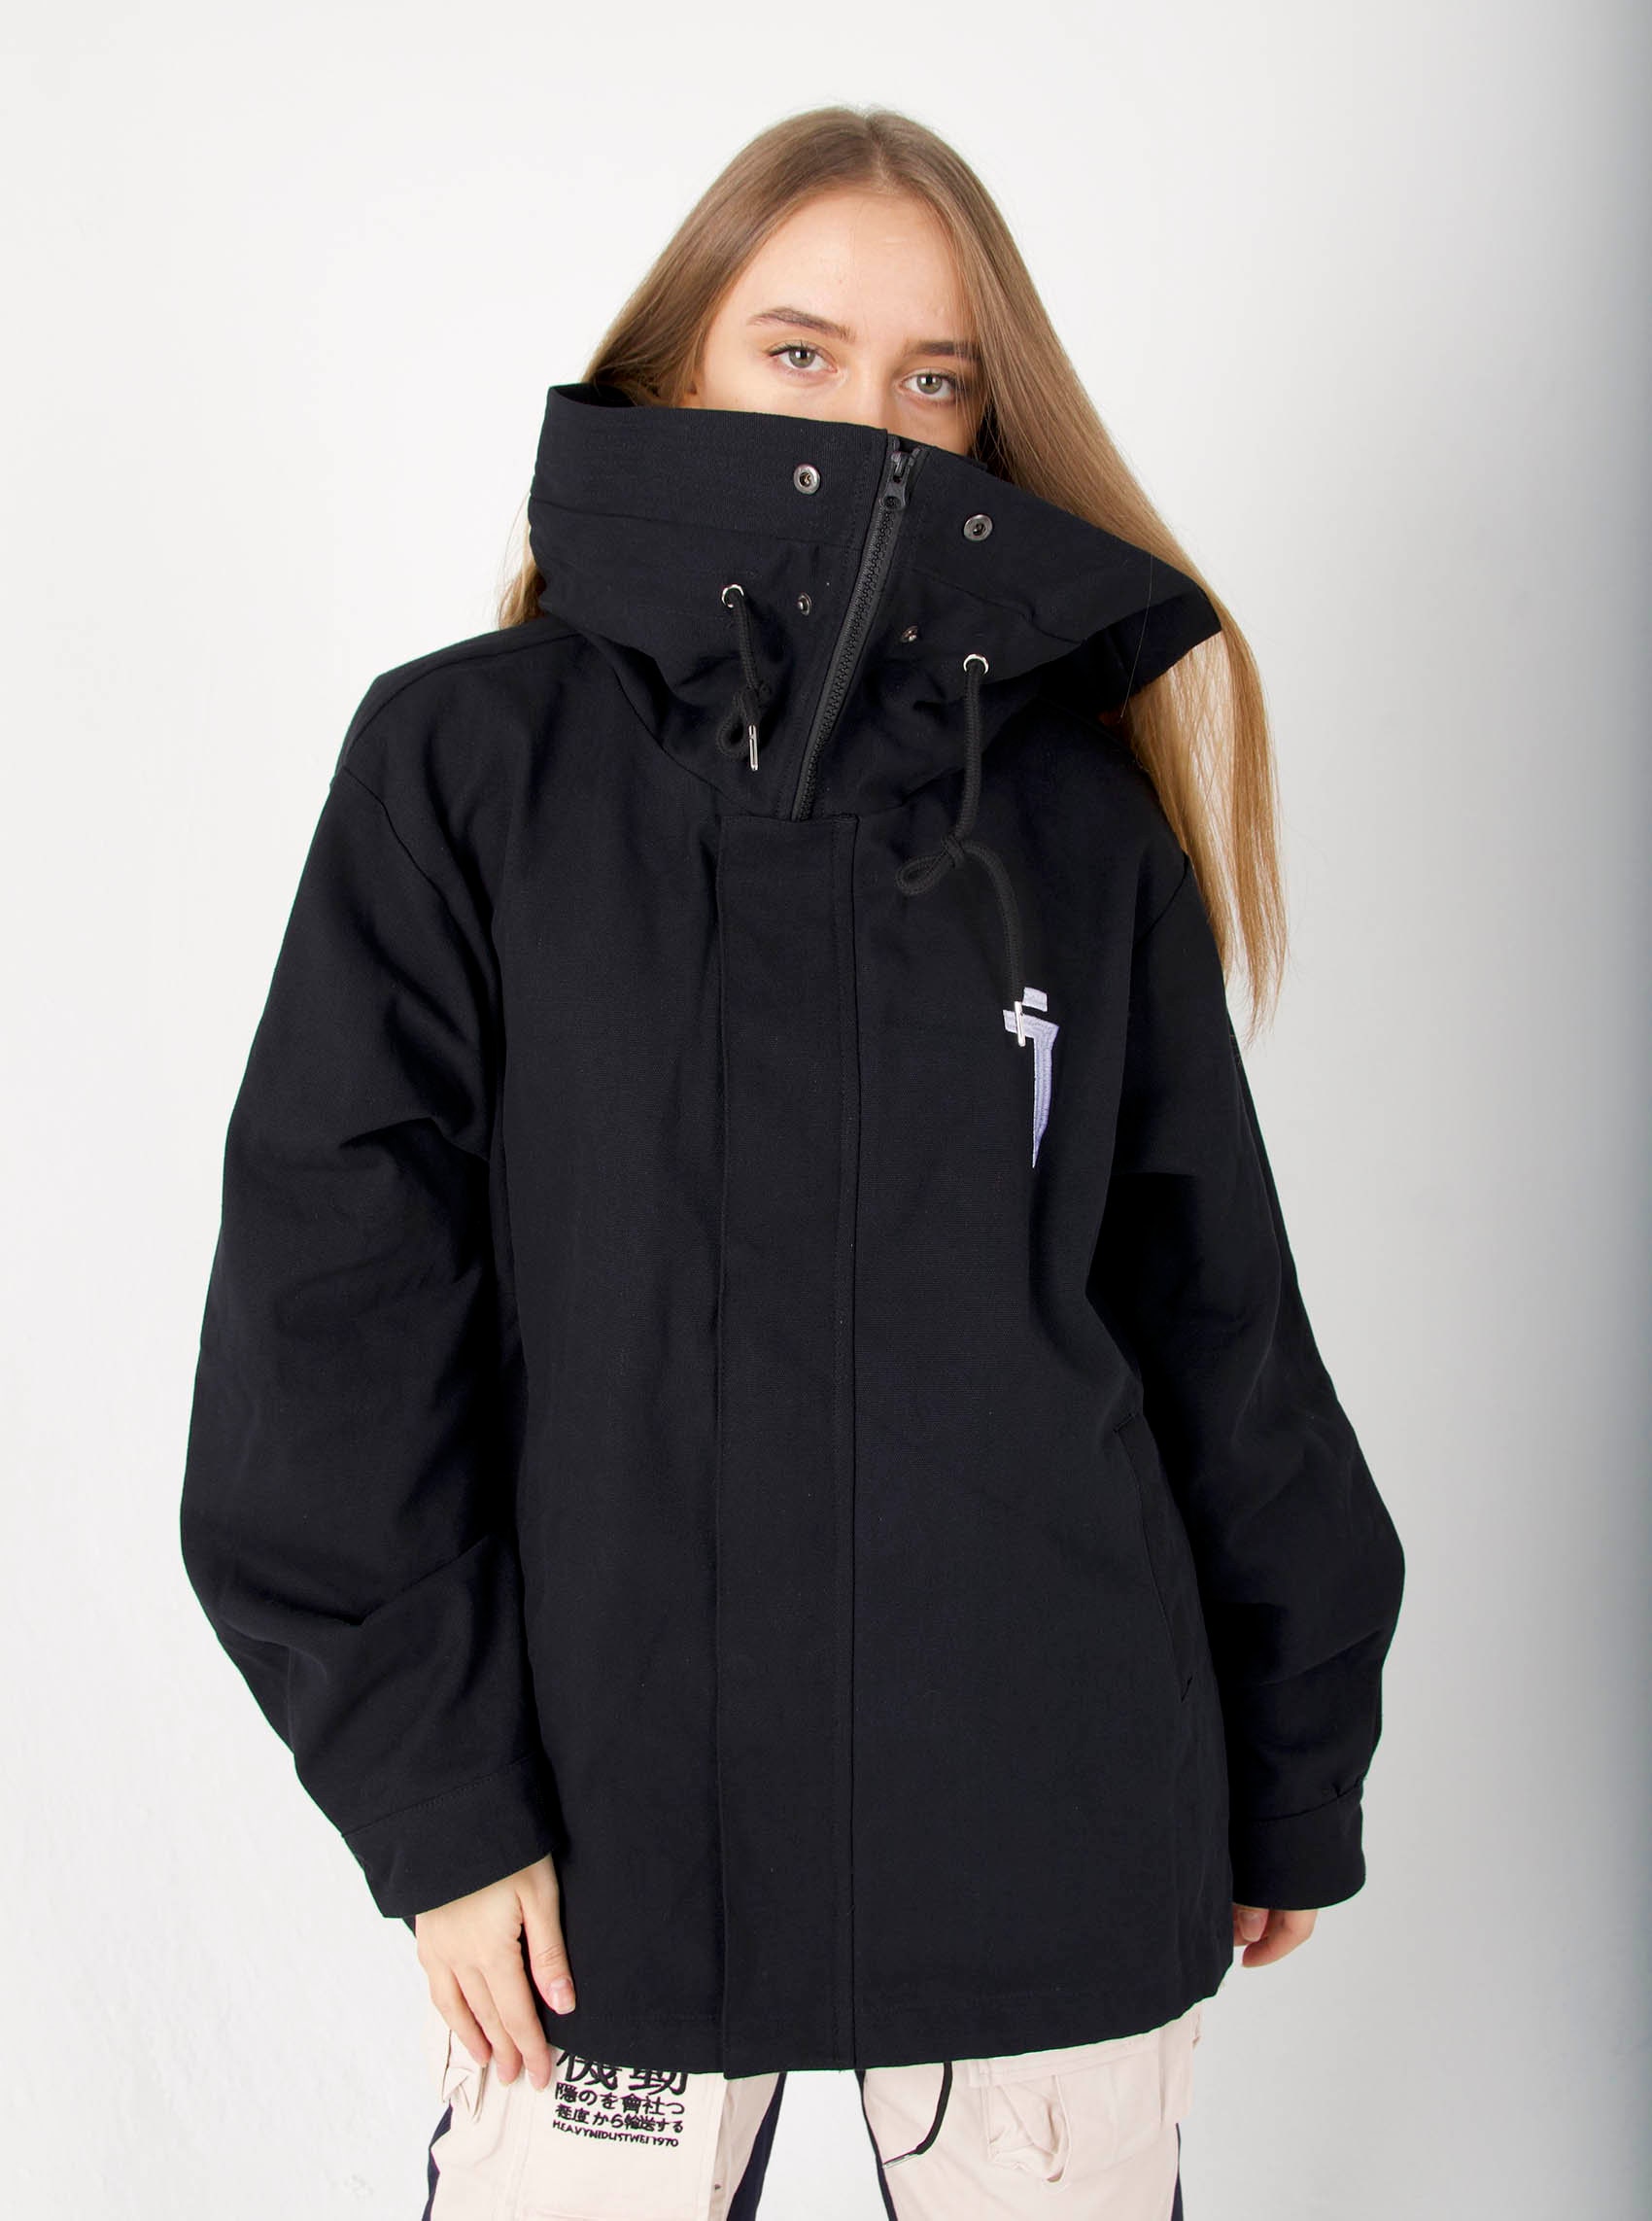 Womens Streetwear Rogue Warrior Black Jacket With Hoodie - Etsy